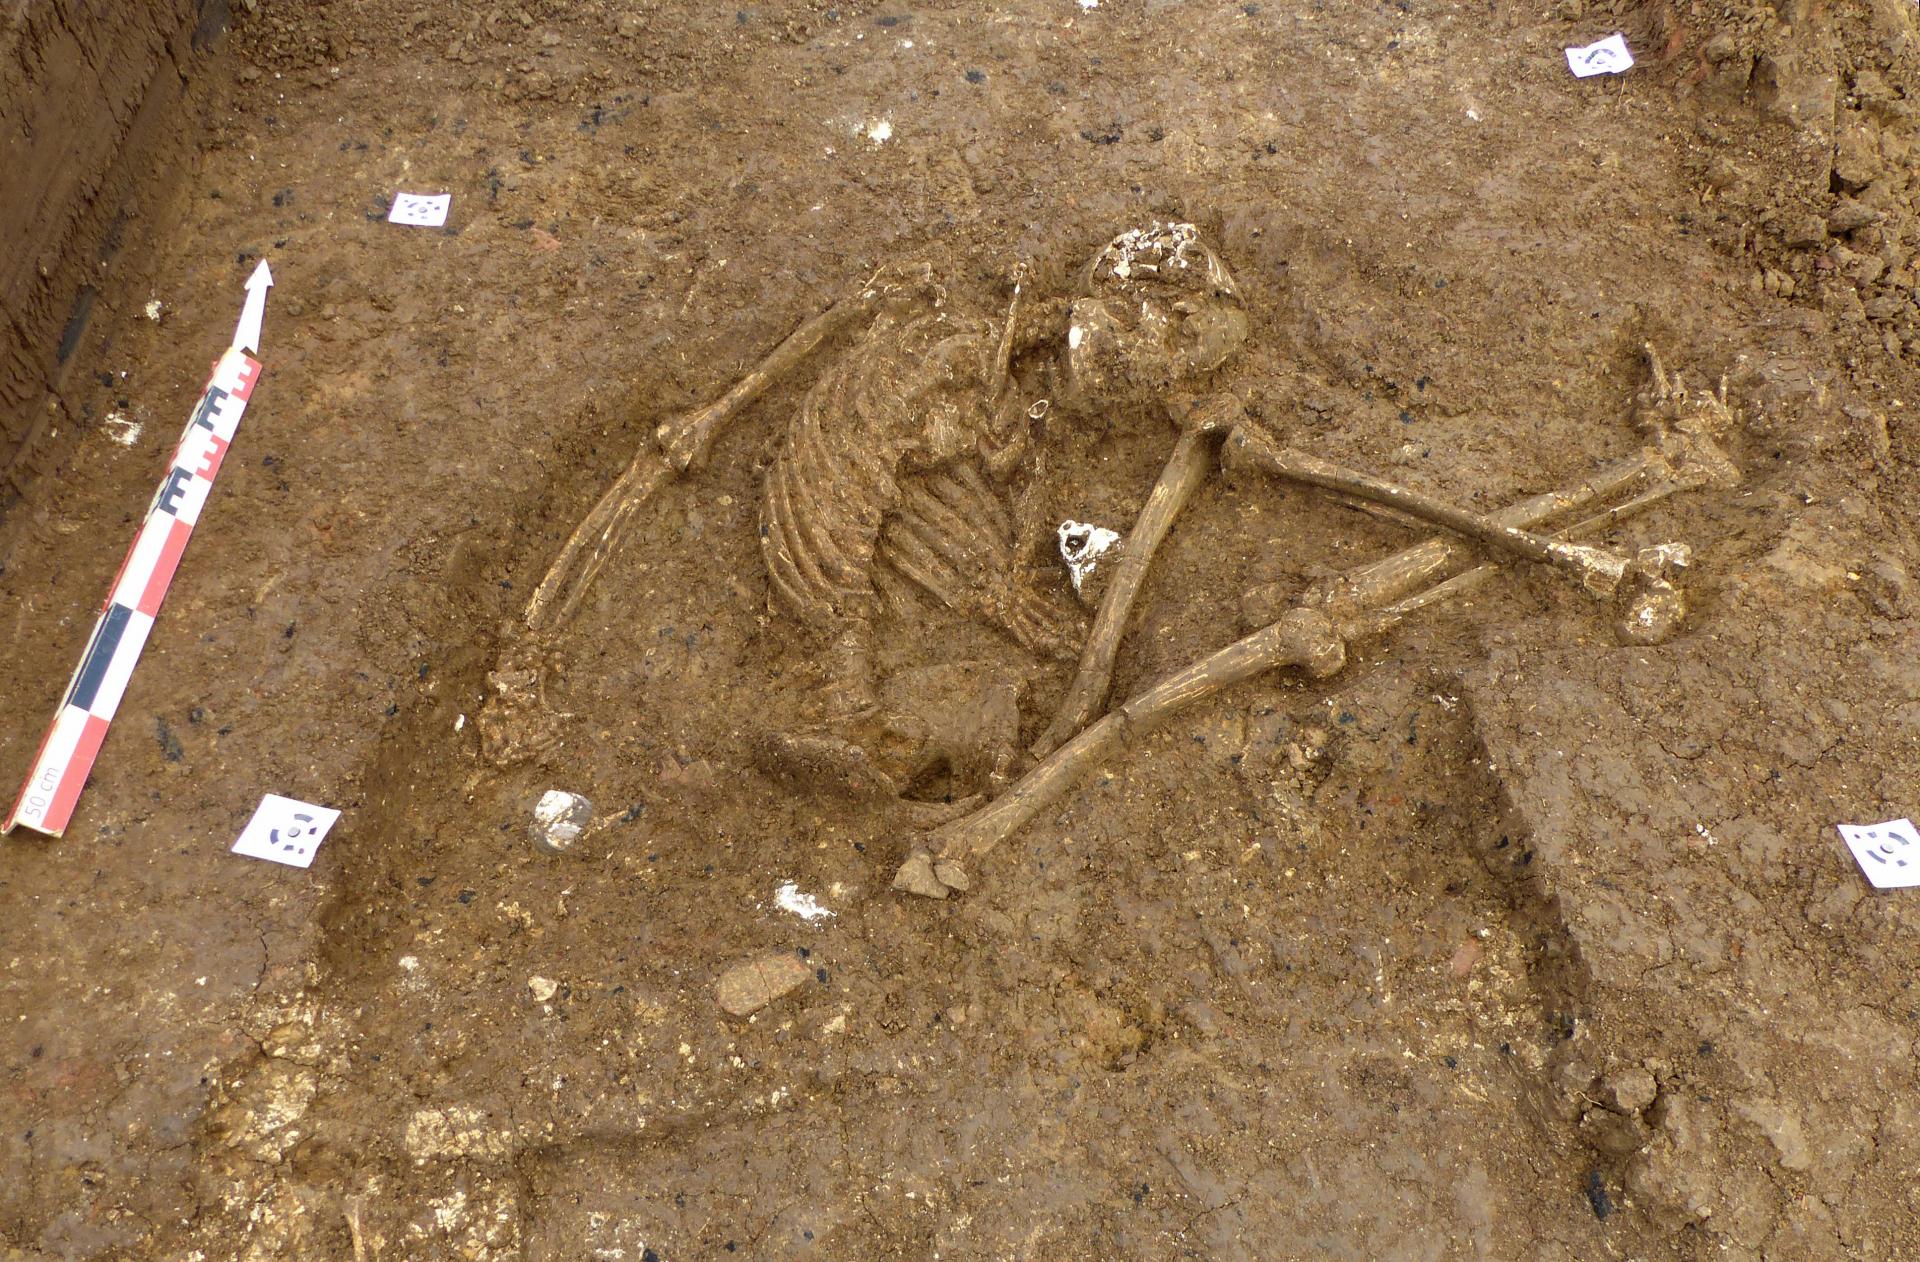     Une centaine de sépultures précolombiennes découvertes aux Abymes

